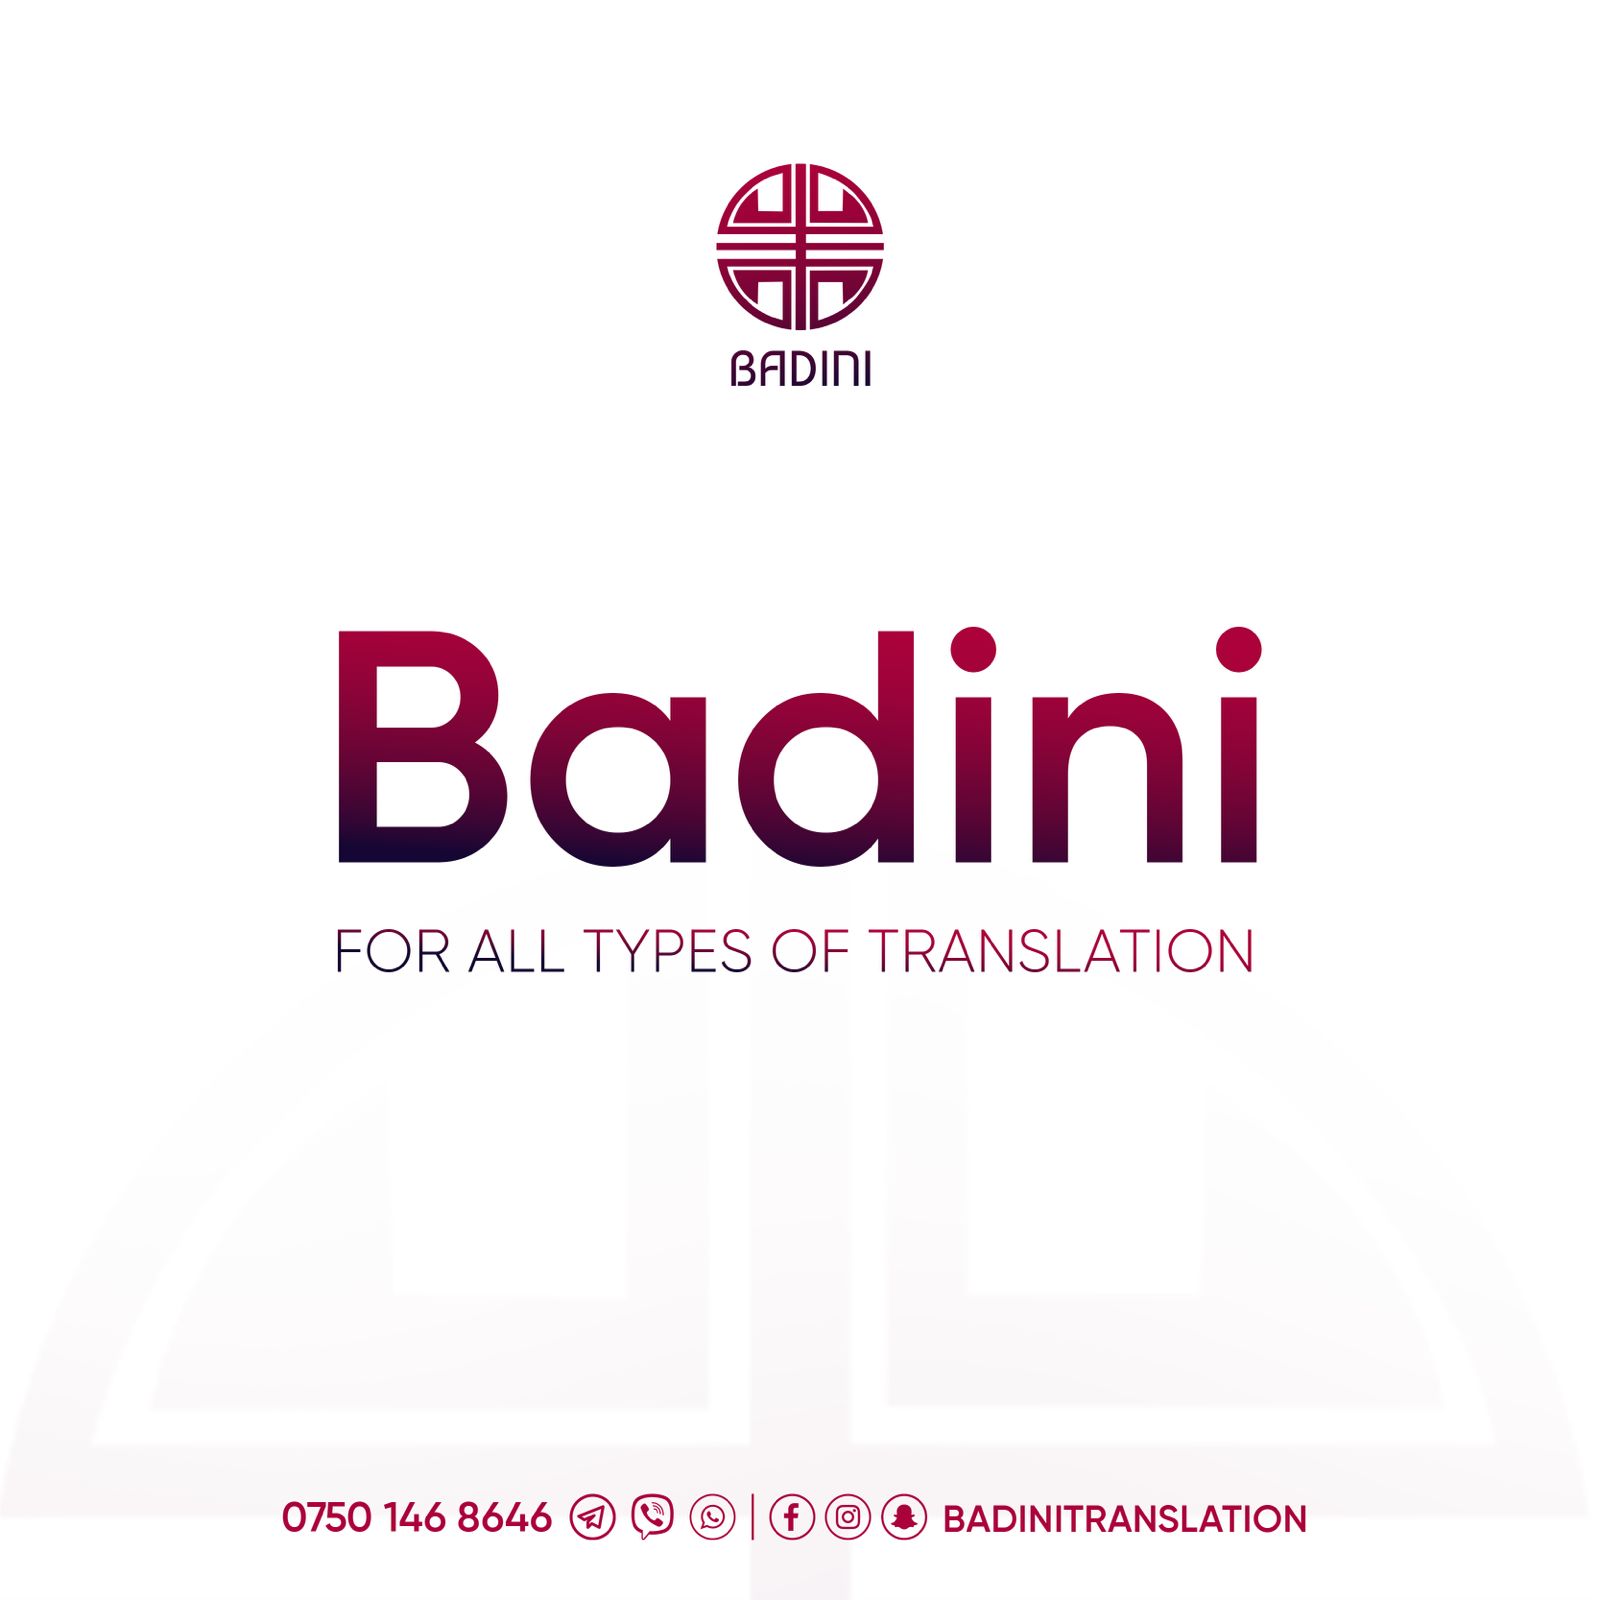 BADINI TRANSLATION